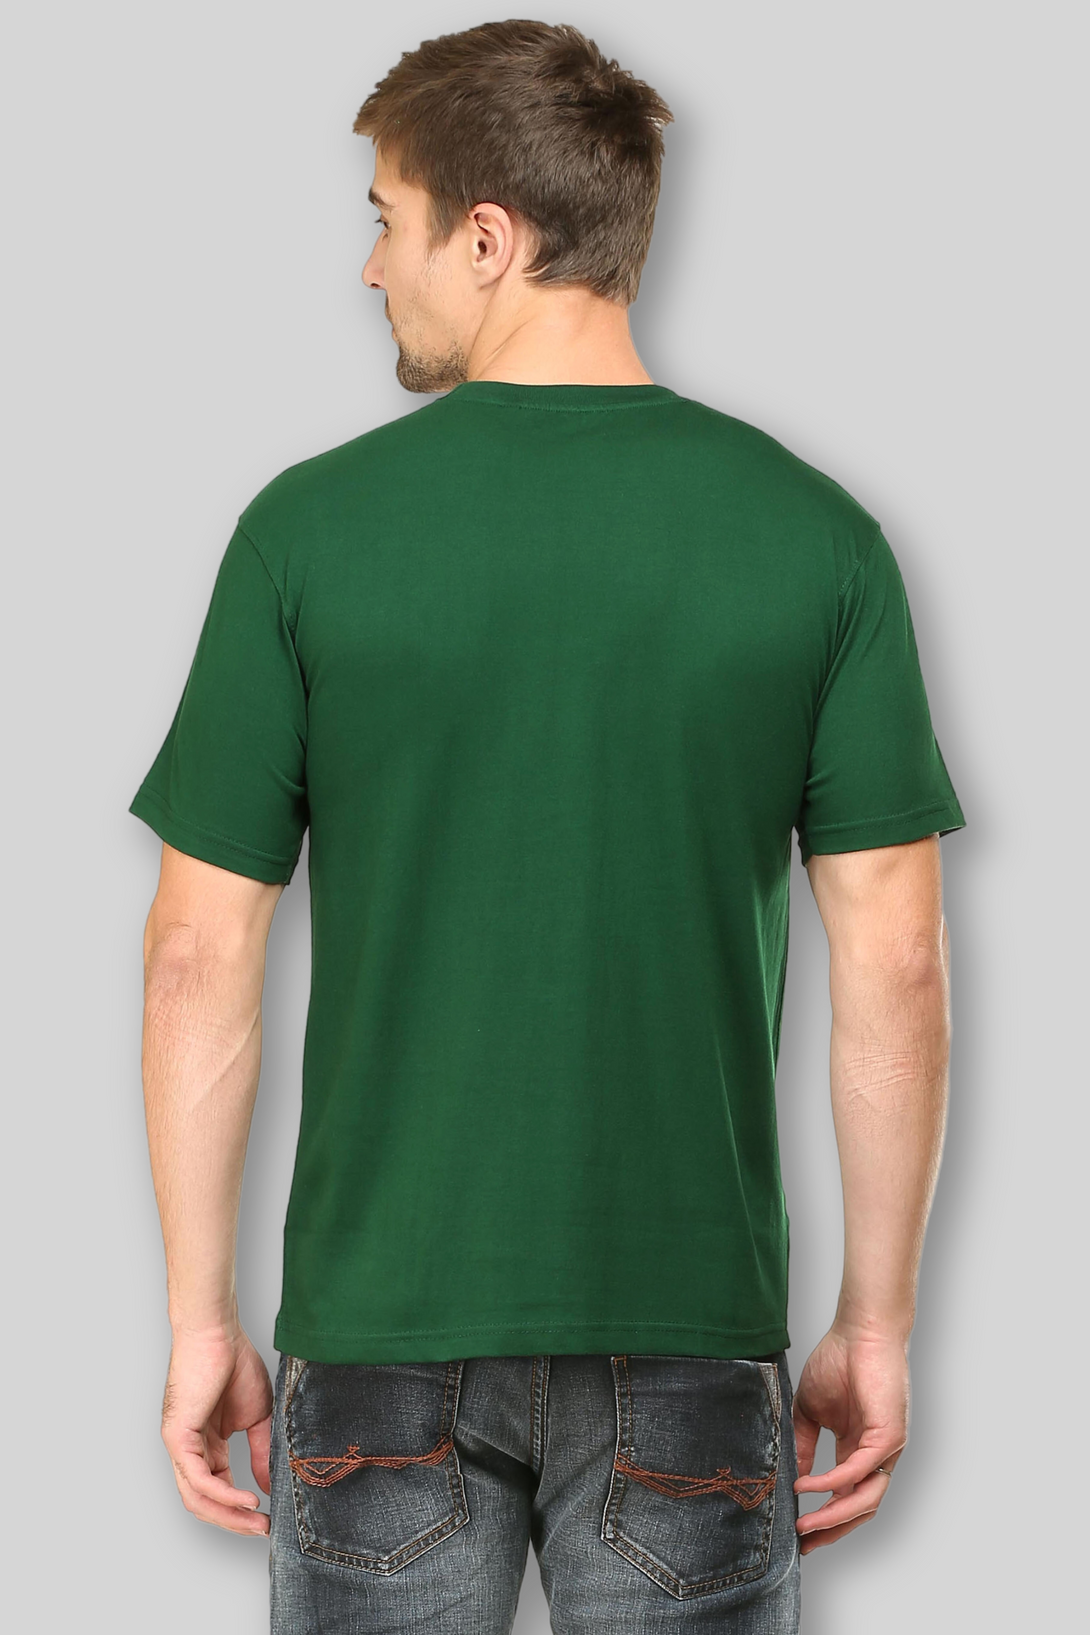 Bottle Green T-Shirt For Men - WowWaves - 5